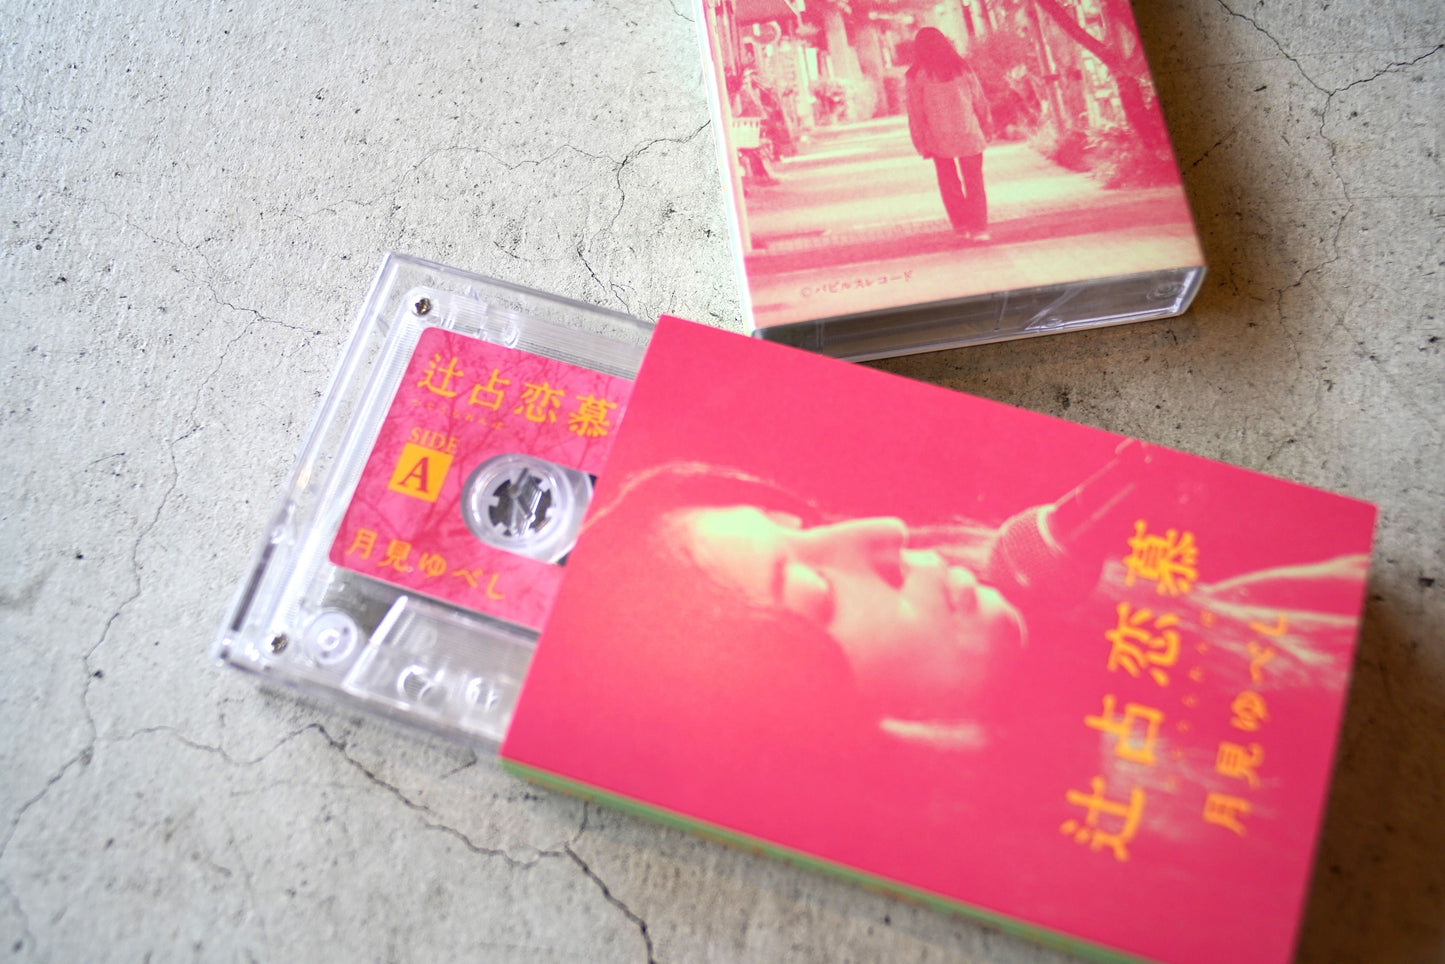 映画『辻占恋慕』カセットテープ